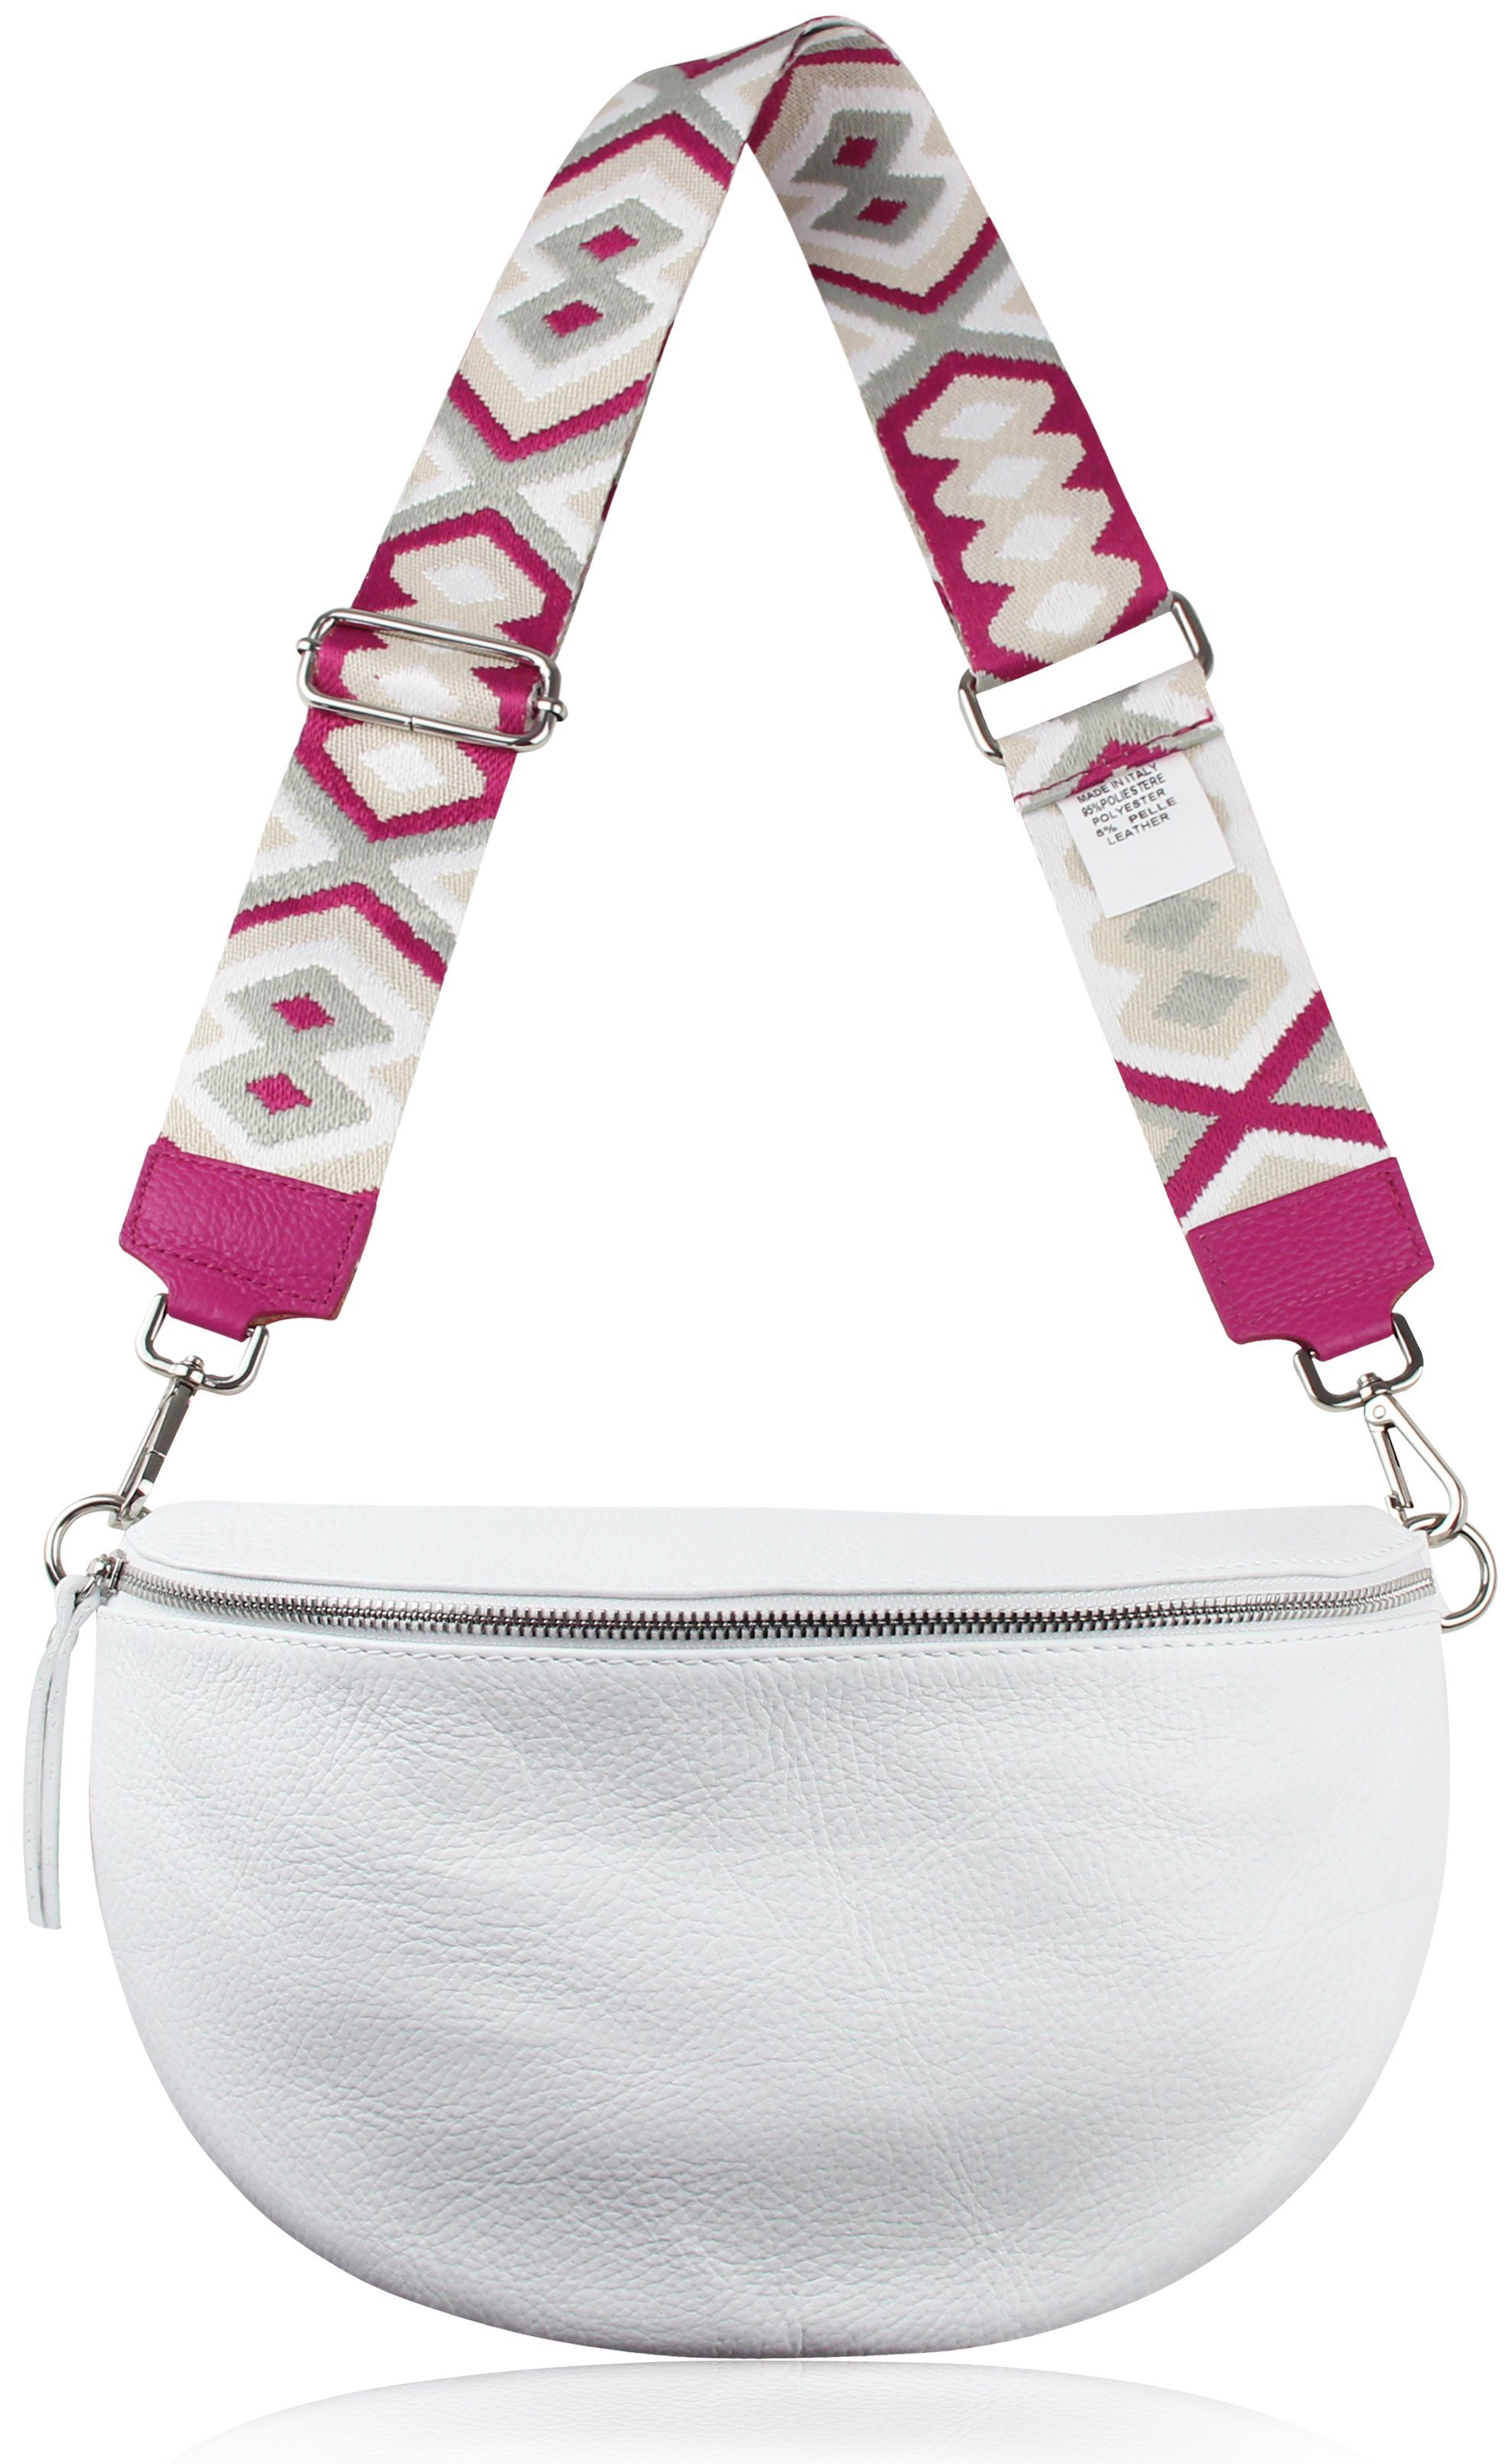 Taschen, IN Gurt, verstellbarer für Frentree breiter Schulterriemen ITALY, MADE 5cm Bunt Pink Muster: Schultergurt